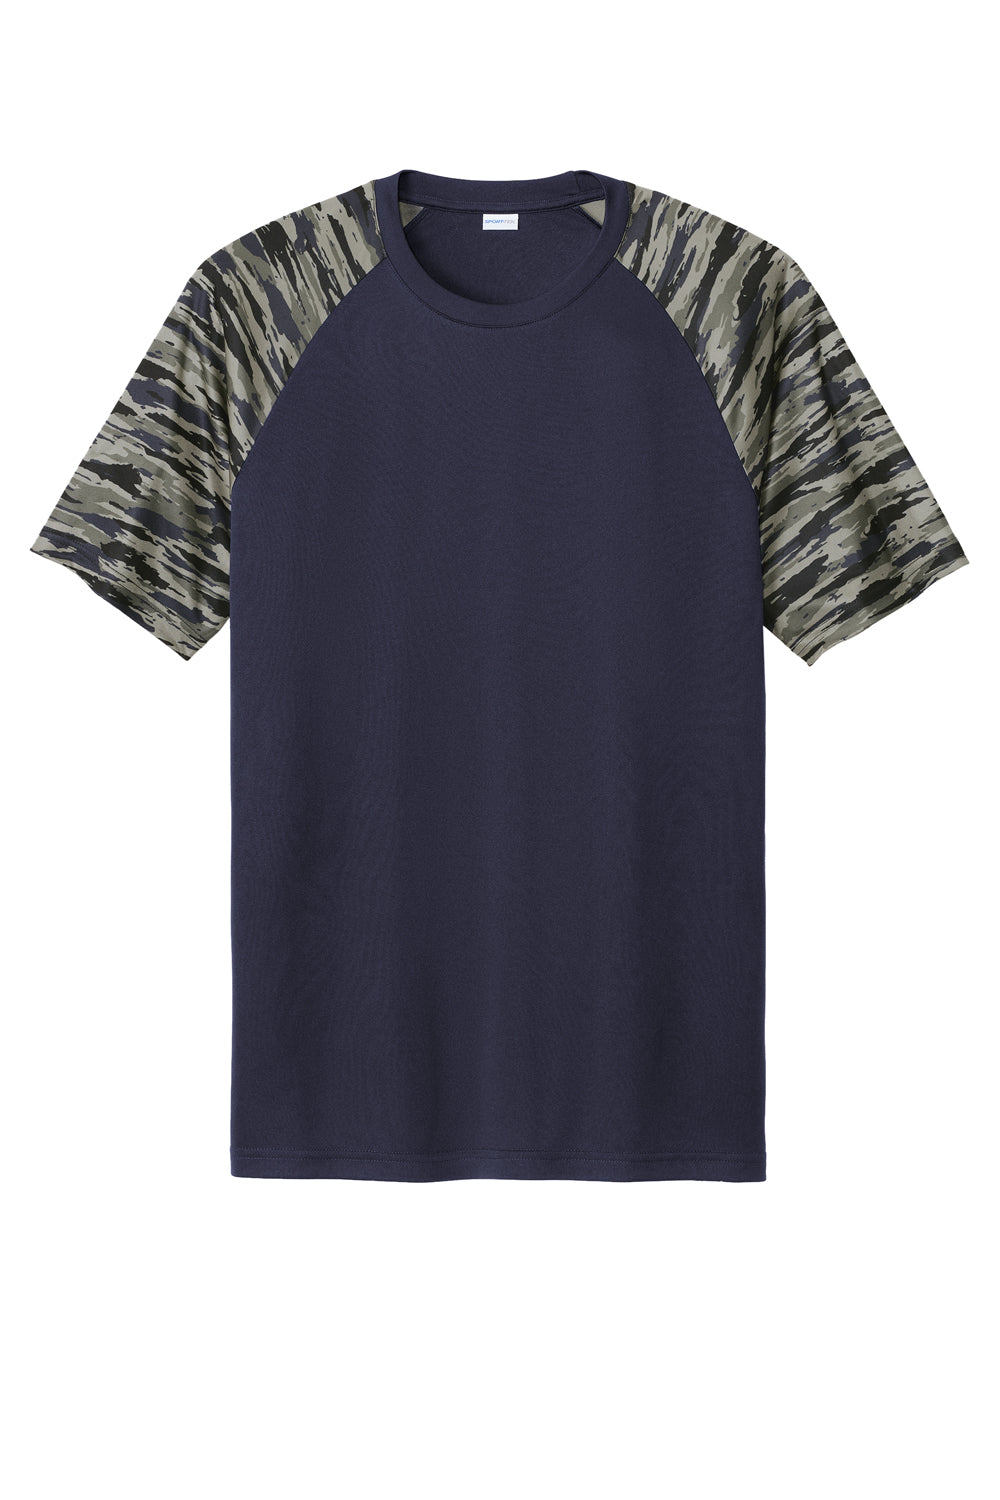 Sport-Tek Mens Drift Camo Colorblock Short Sleeve Crewneck T-Shirt True Navy Blue Flat Front